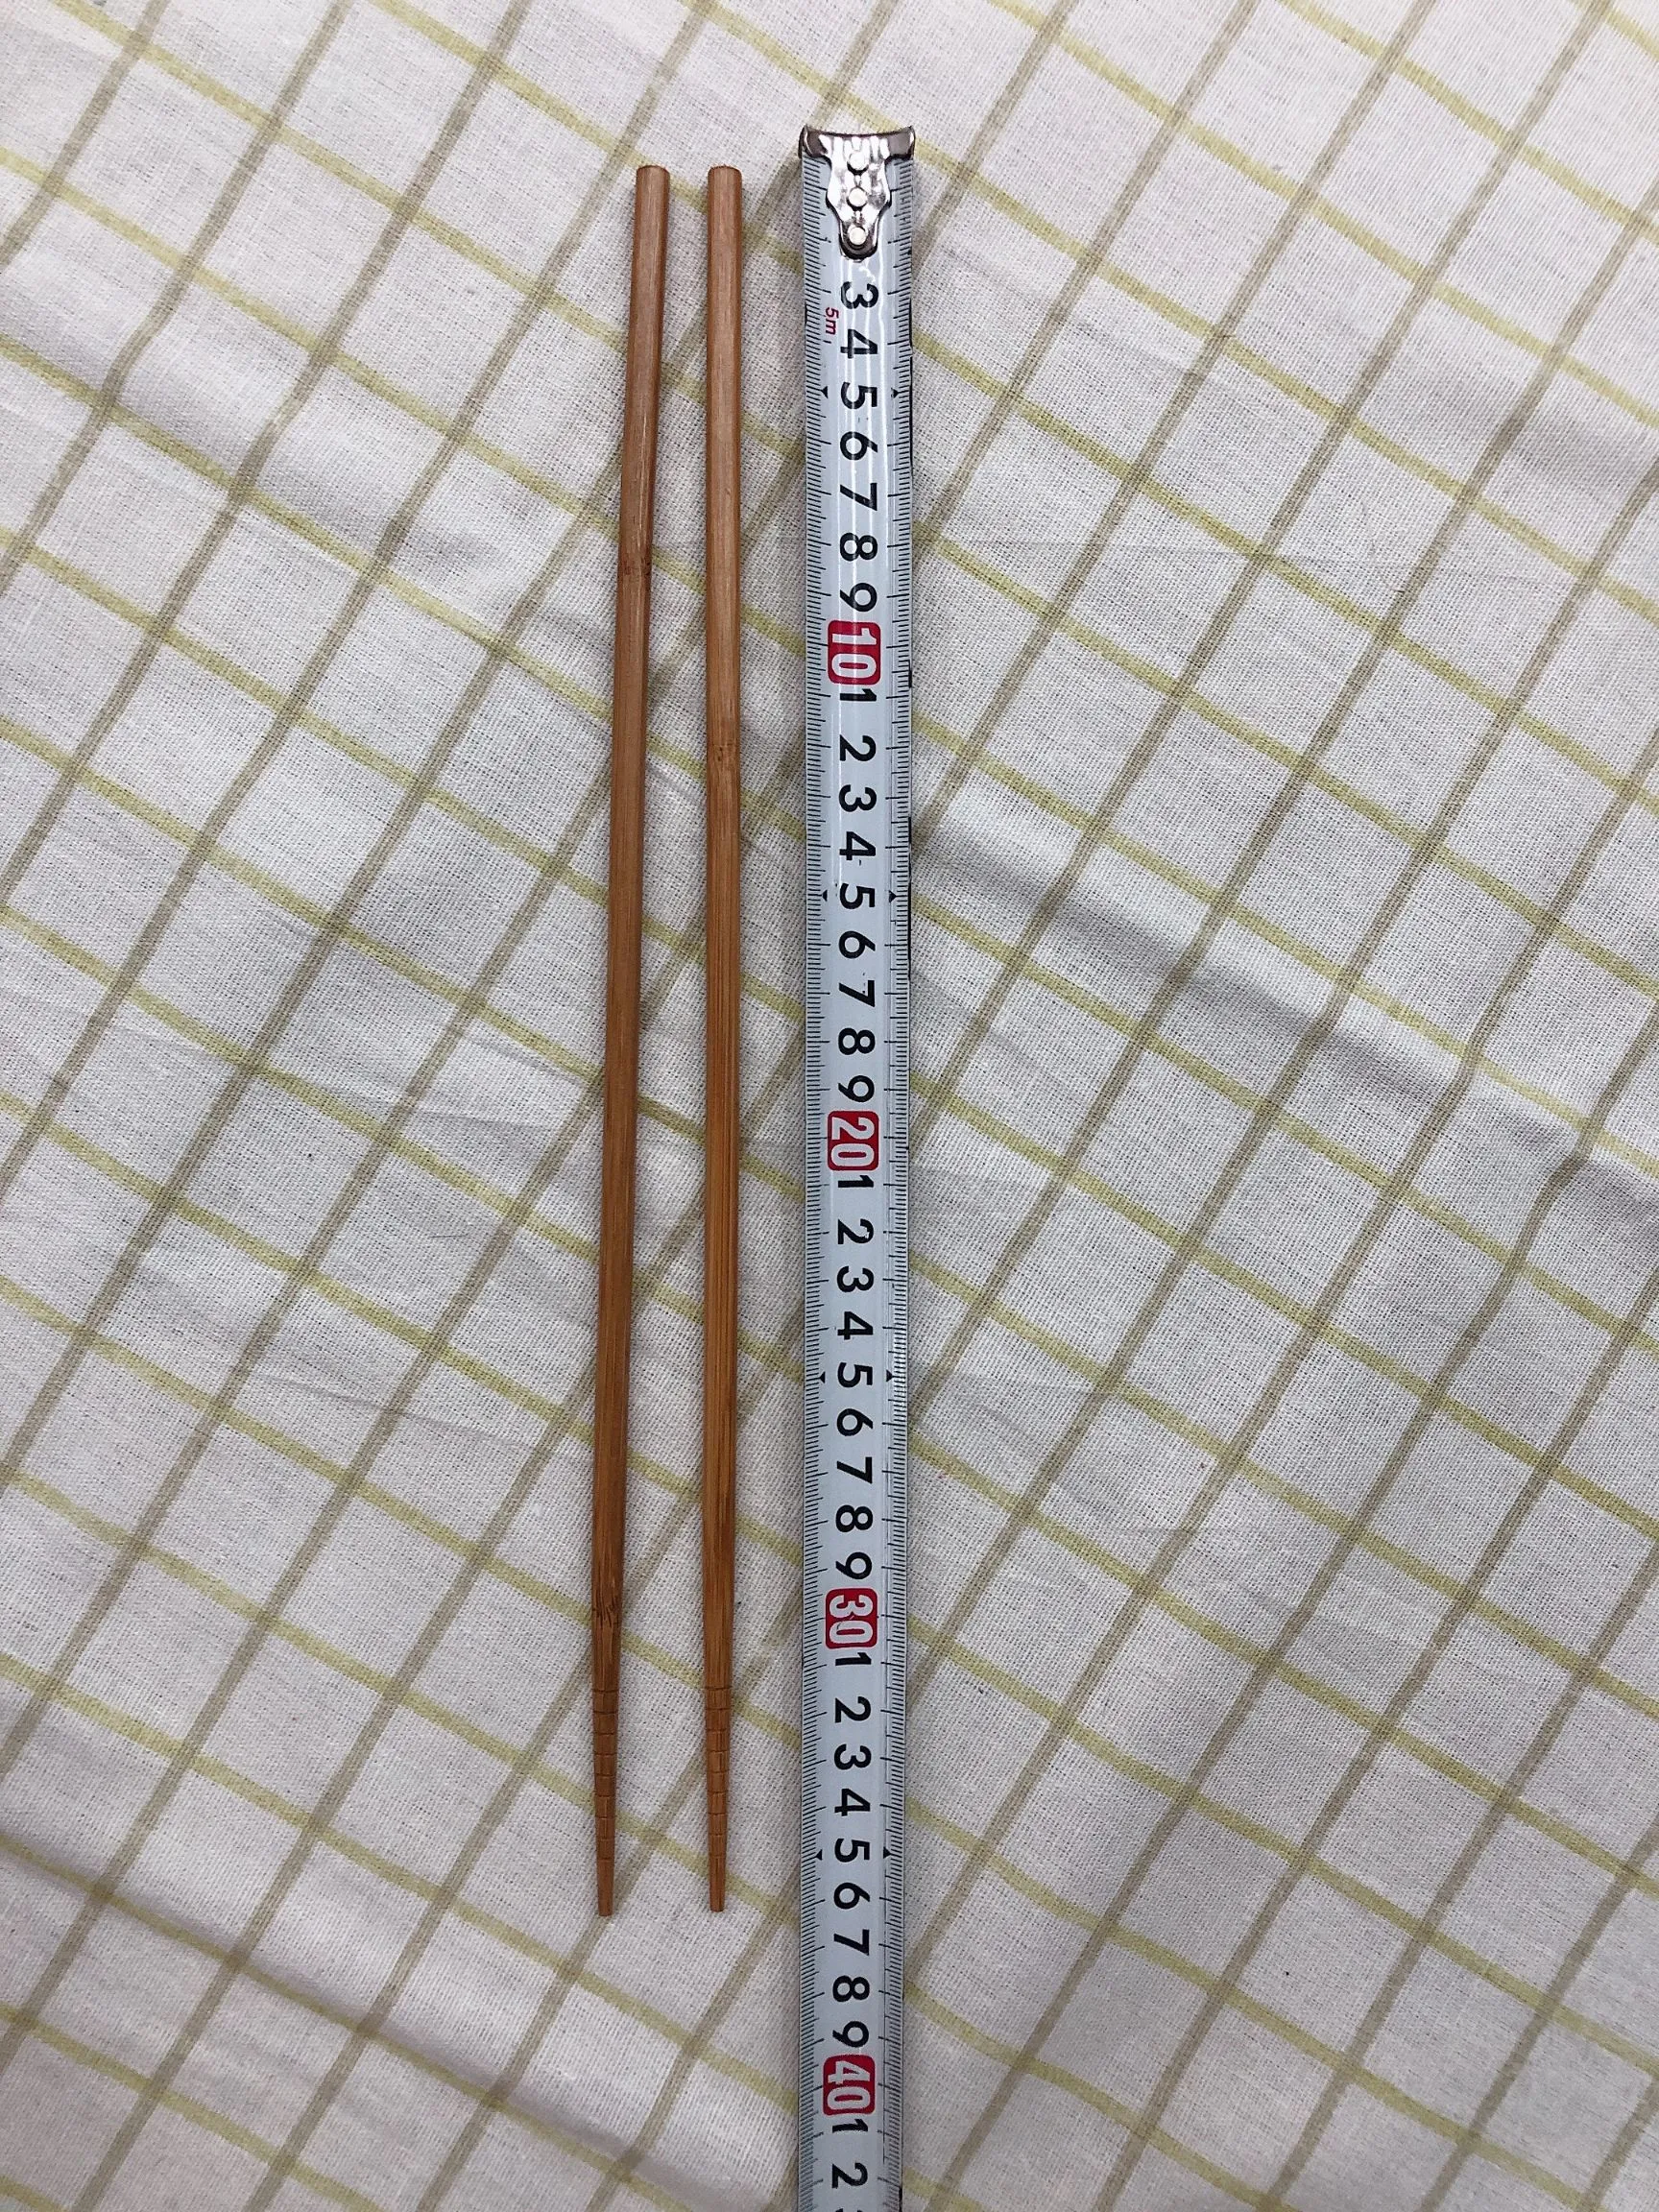 火锅筷/竹筷/家用筷细节图